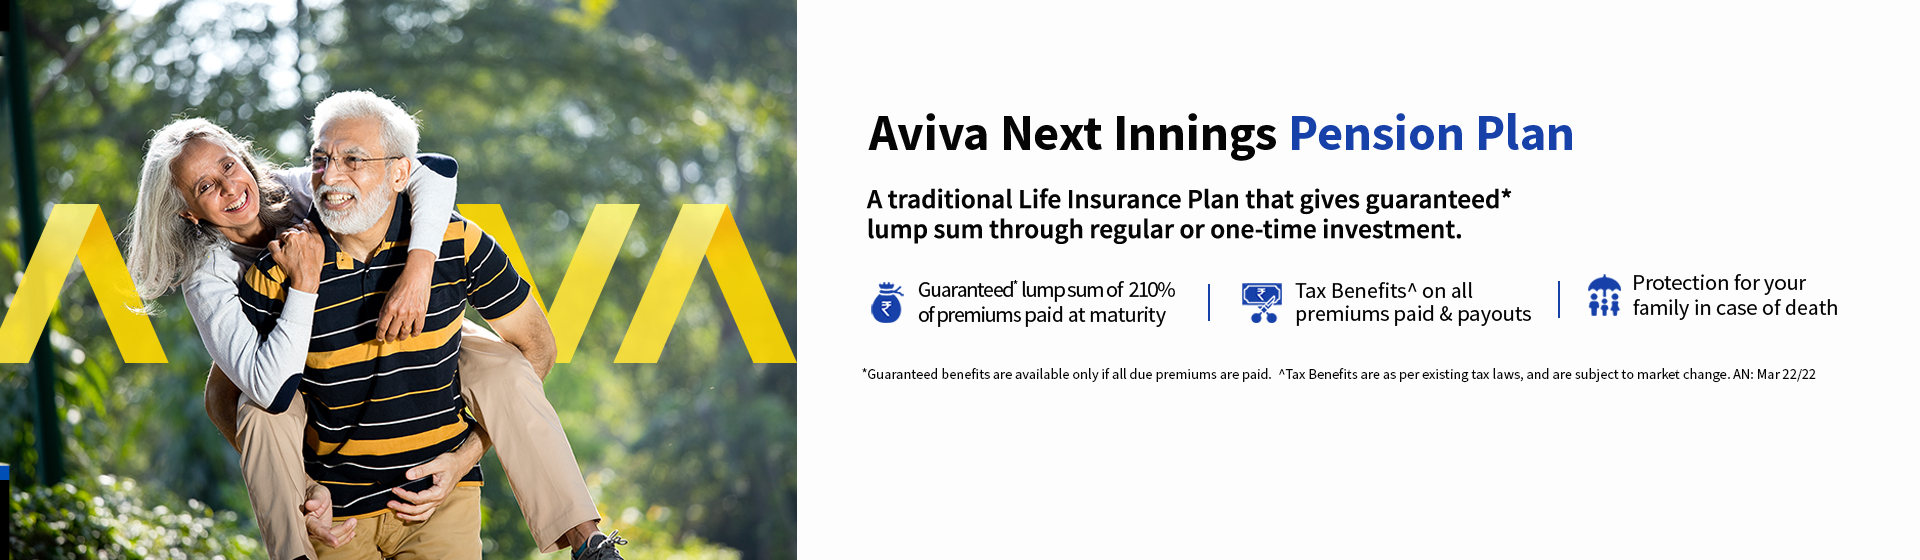 Aviva Next Innings Pension Plan-Retirement